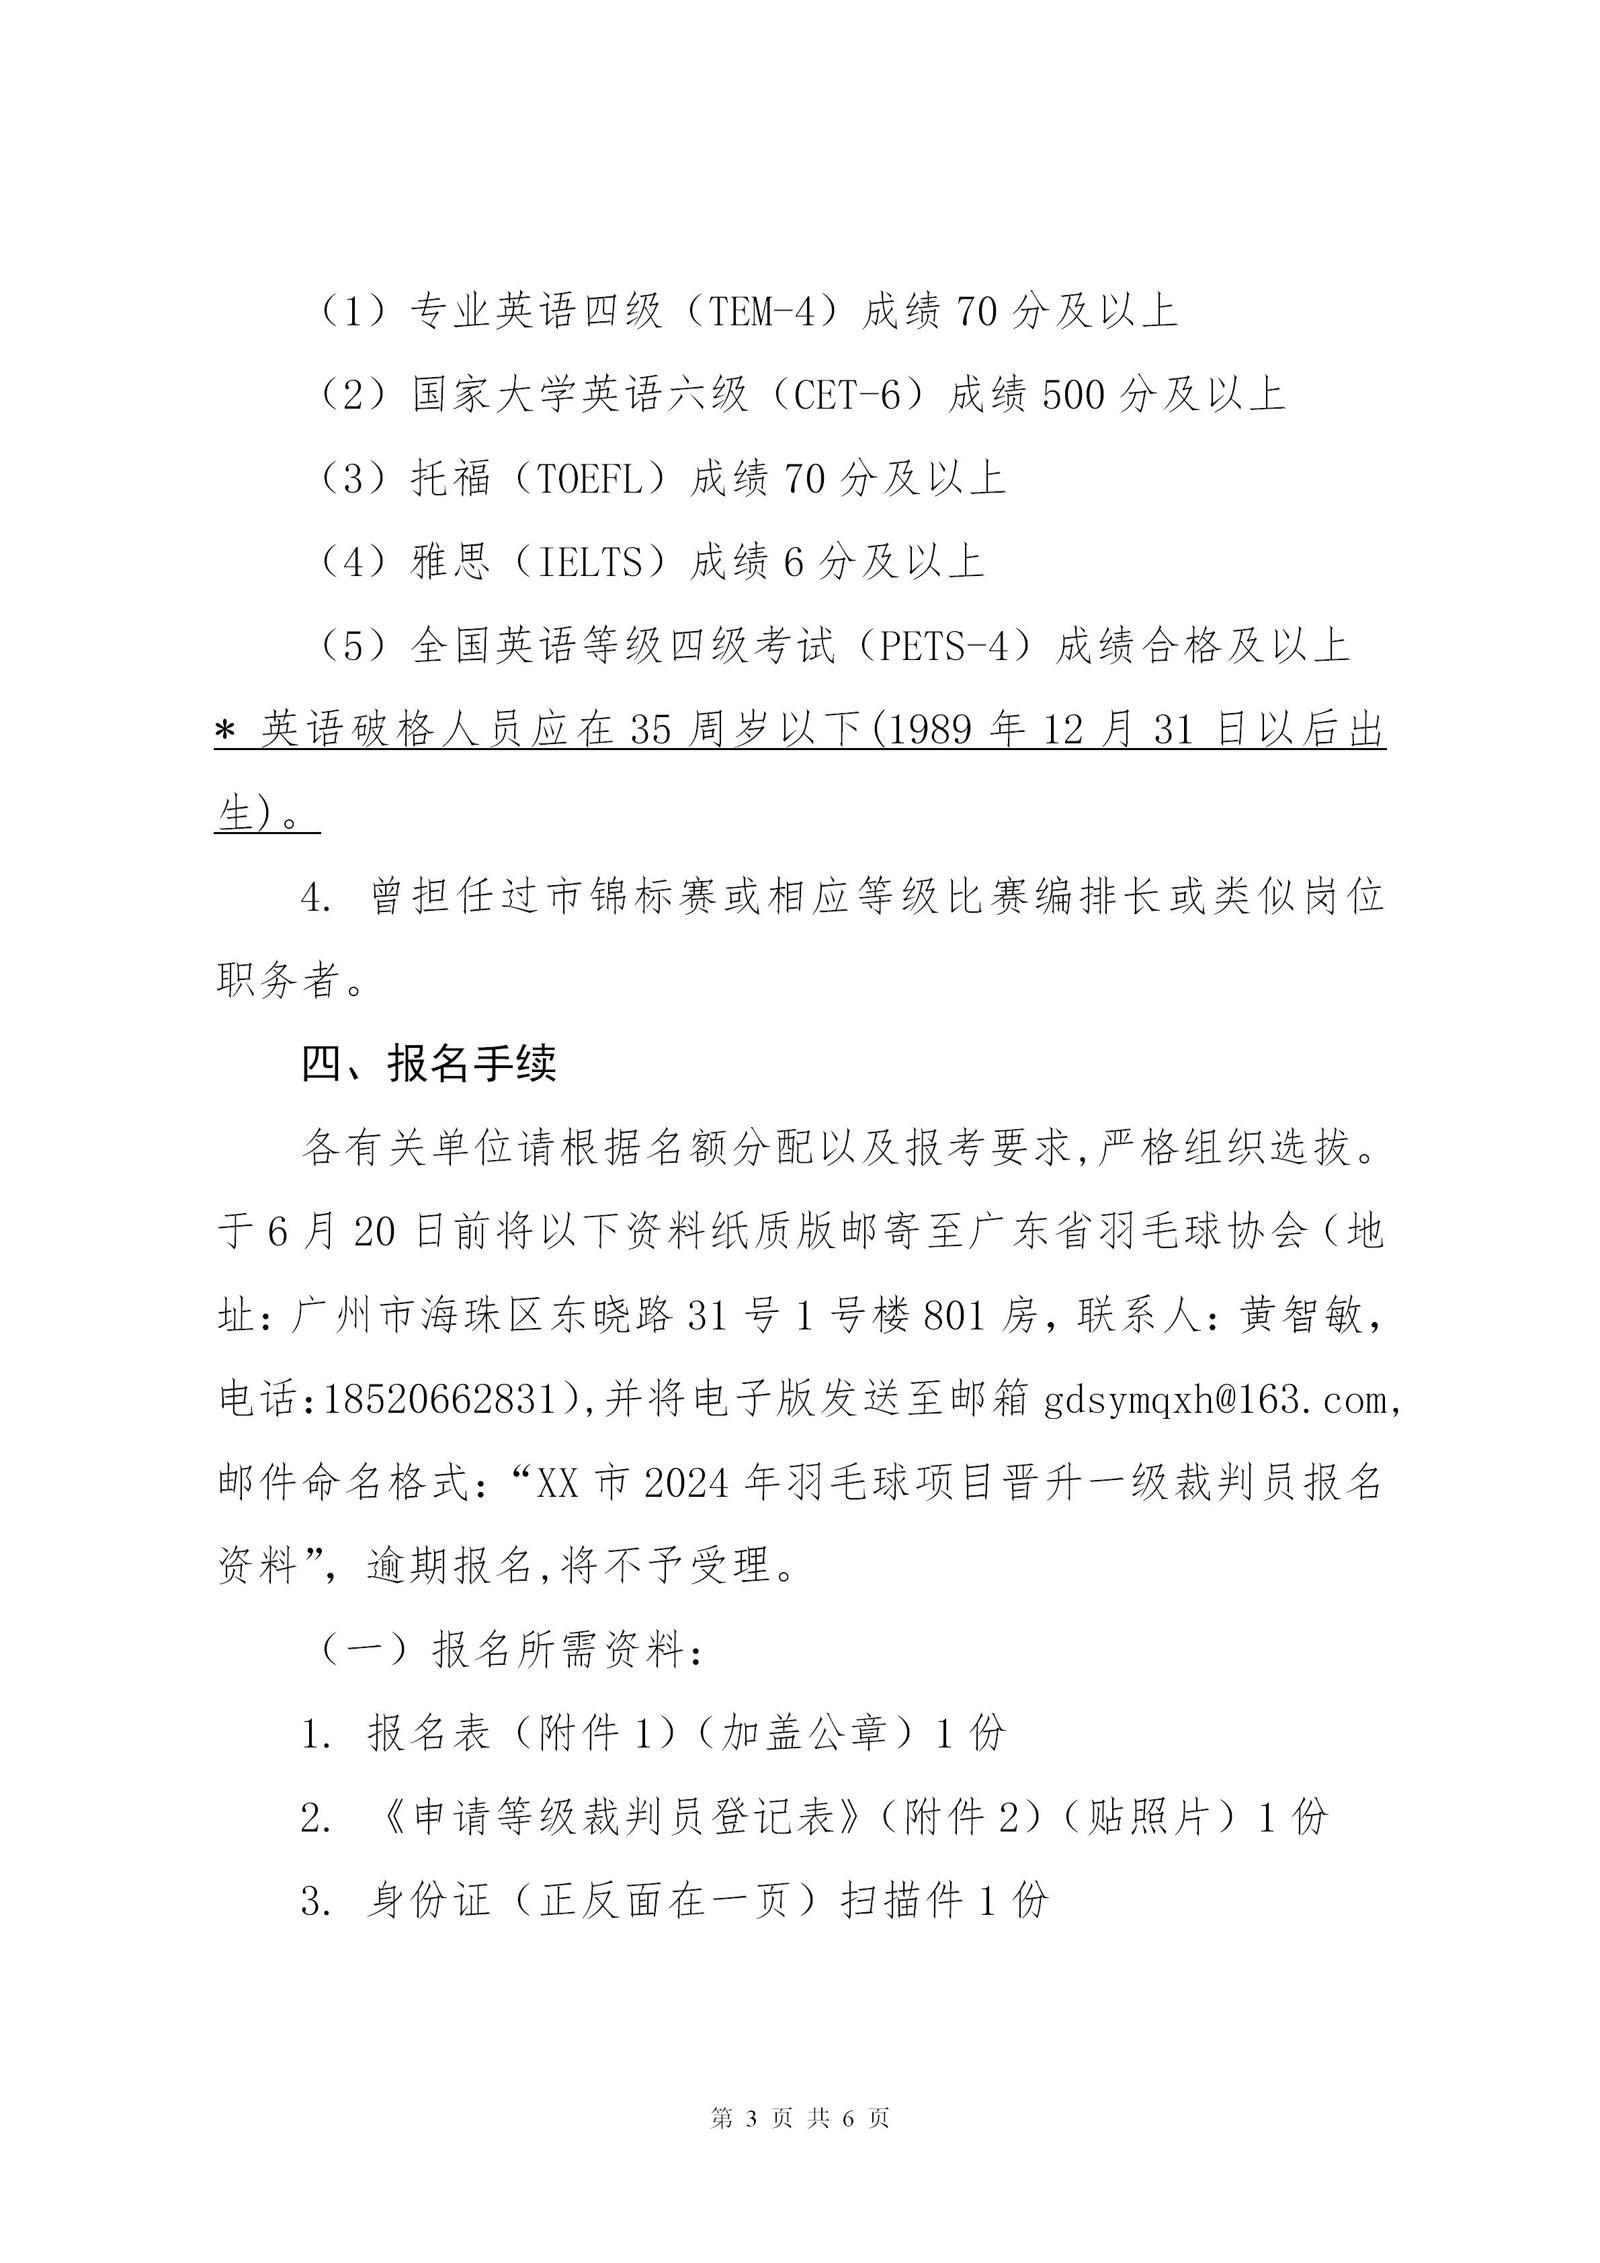 关于2024年广东省羽毛球项目晋升一级裁判员的通知_03